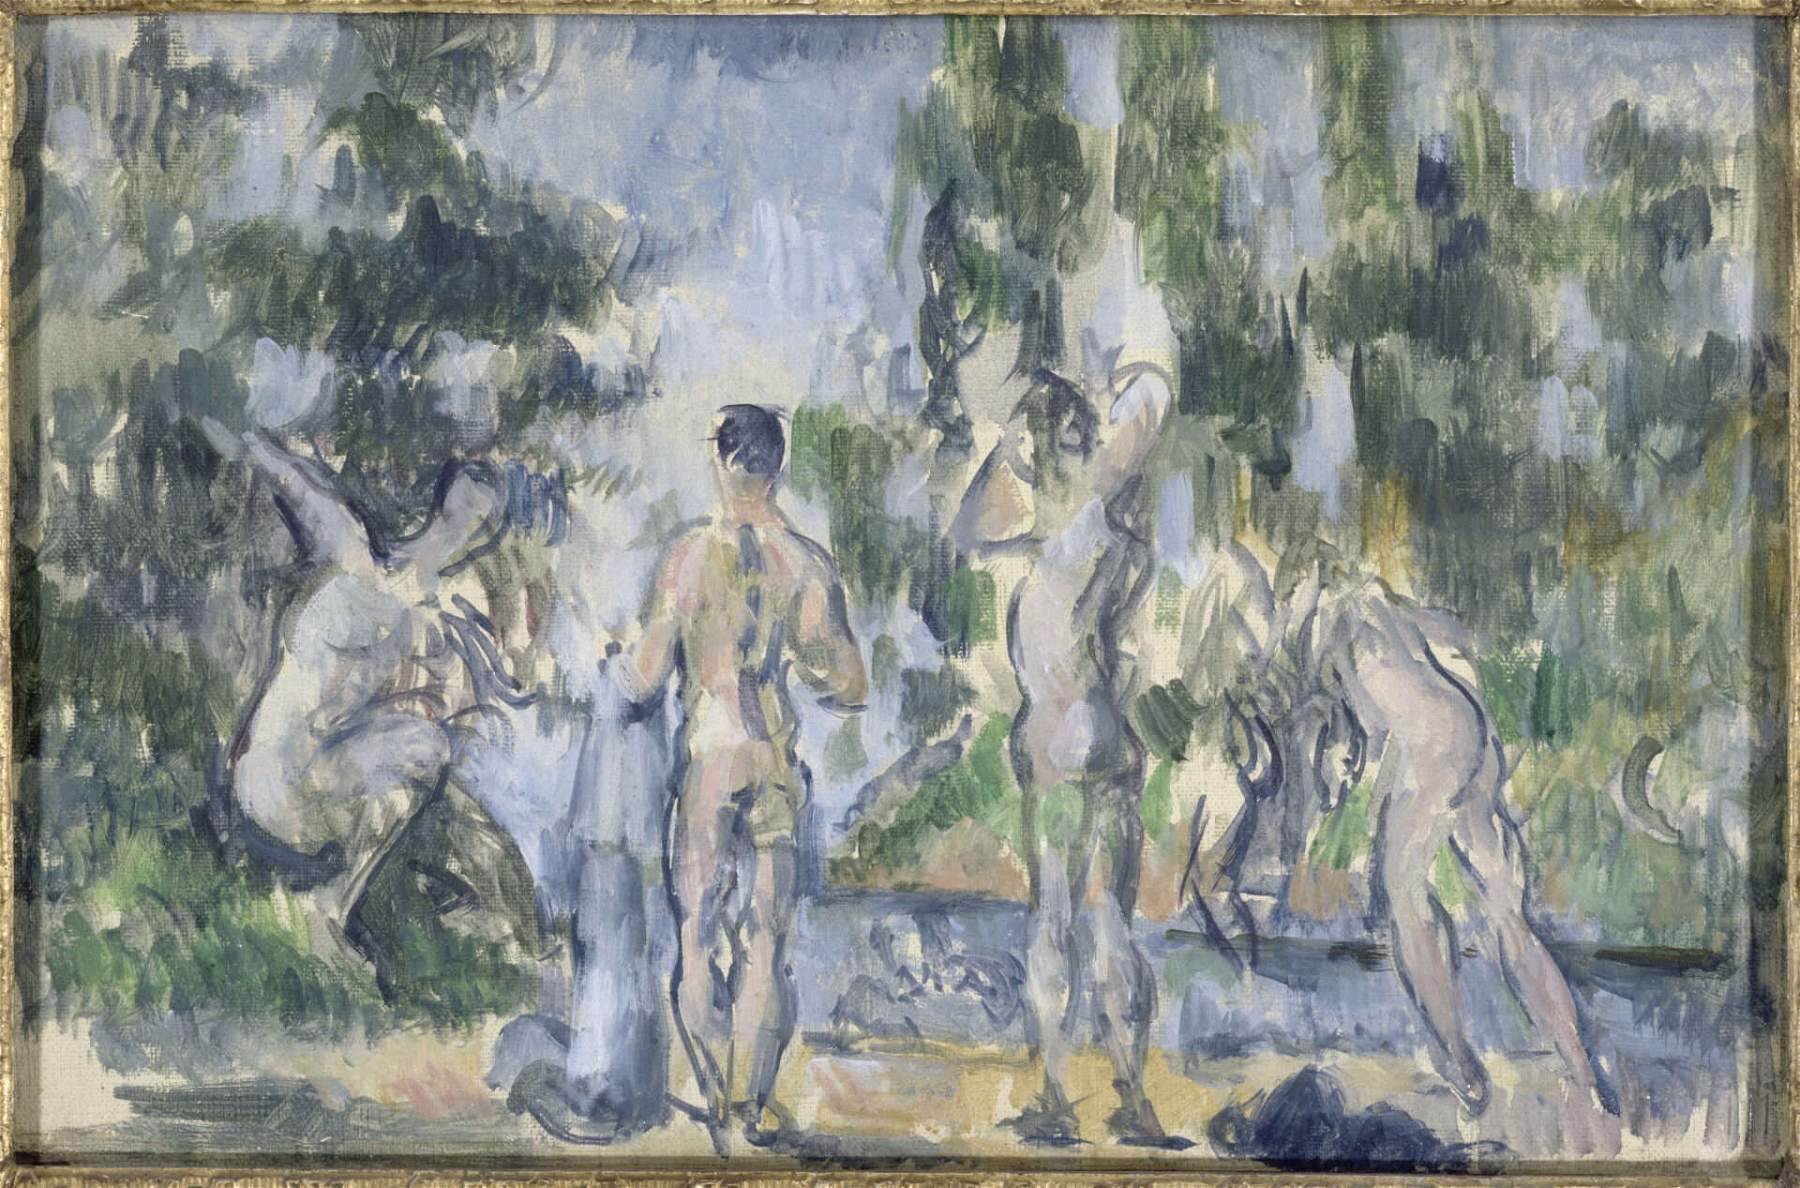 Milan, une grande exposition au Palazzo Reale confronte Cézanne et Renoir